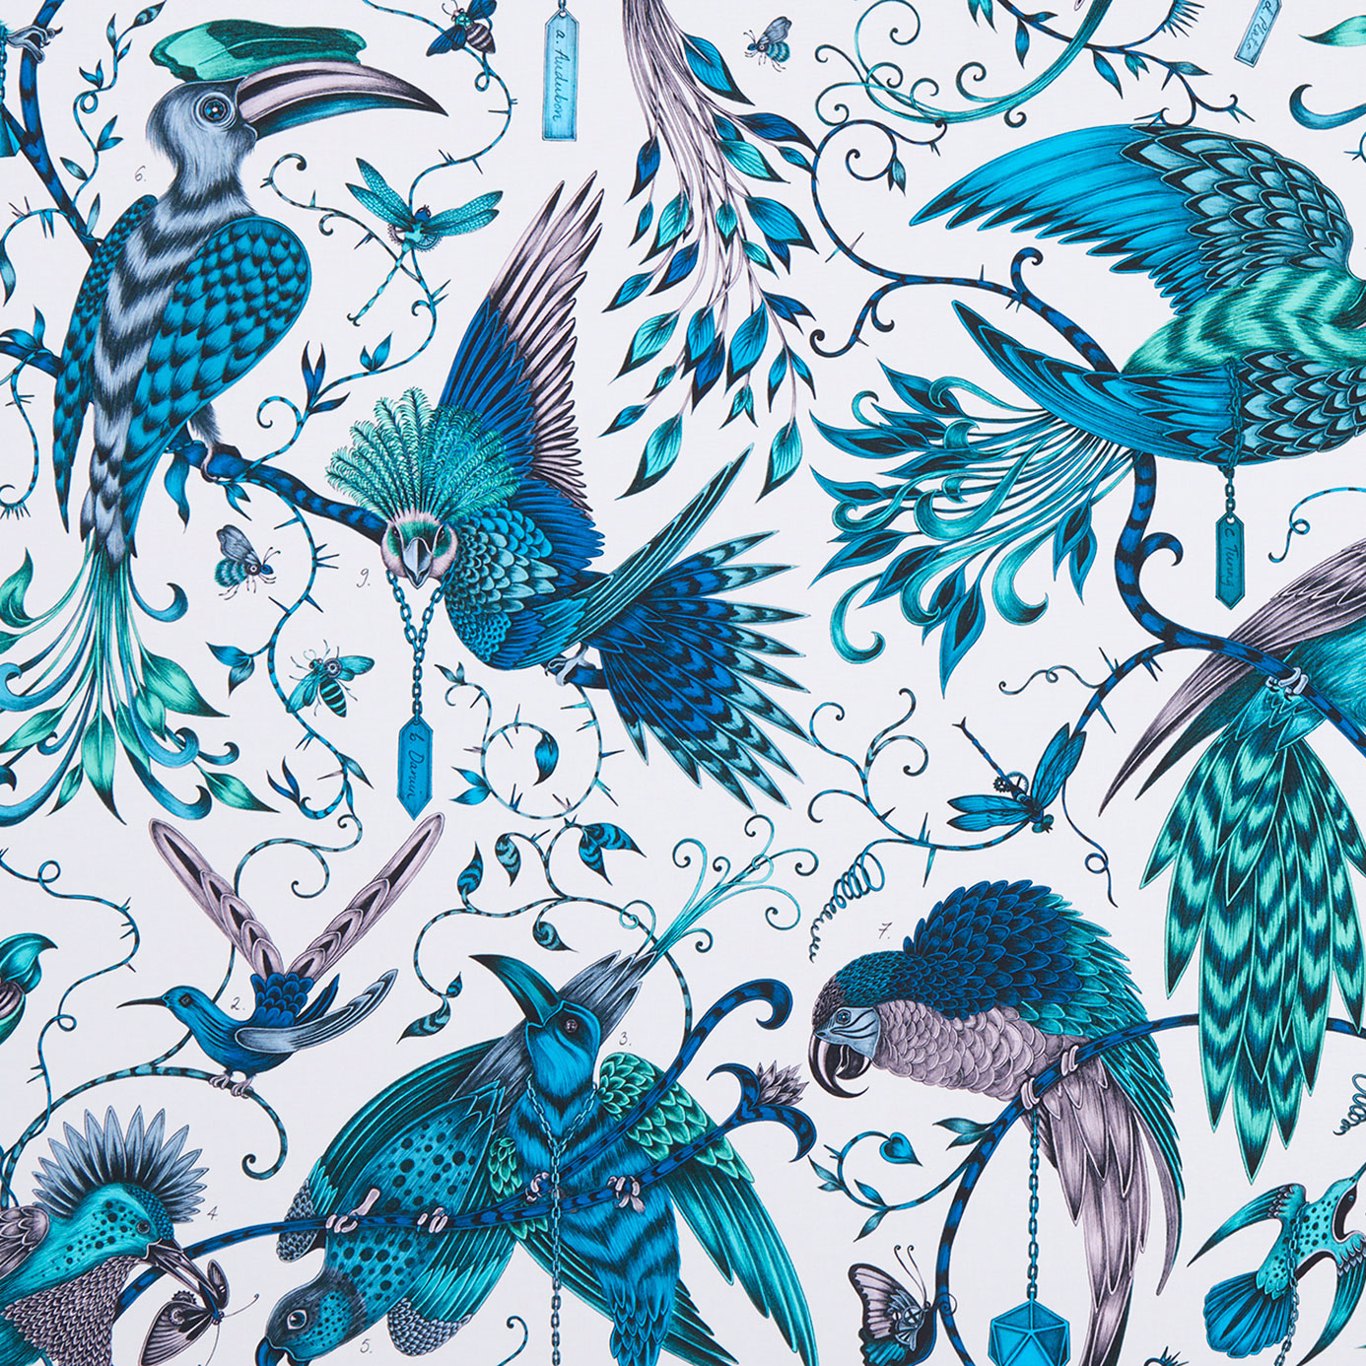 Audubon Fabric by Emma Shipley - F1108/03 - Jungle